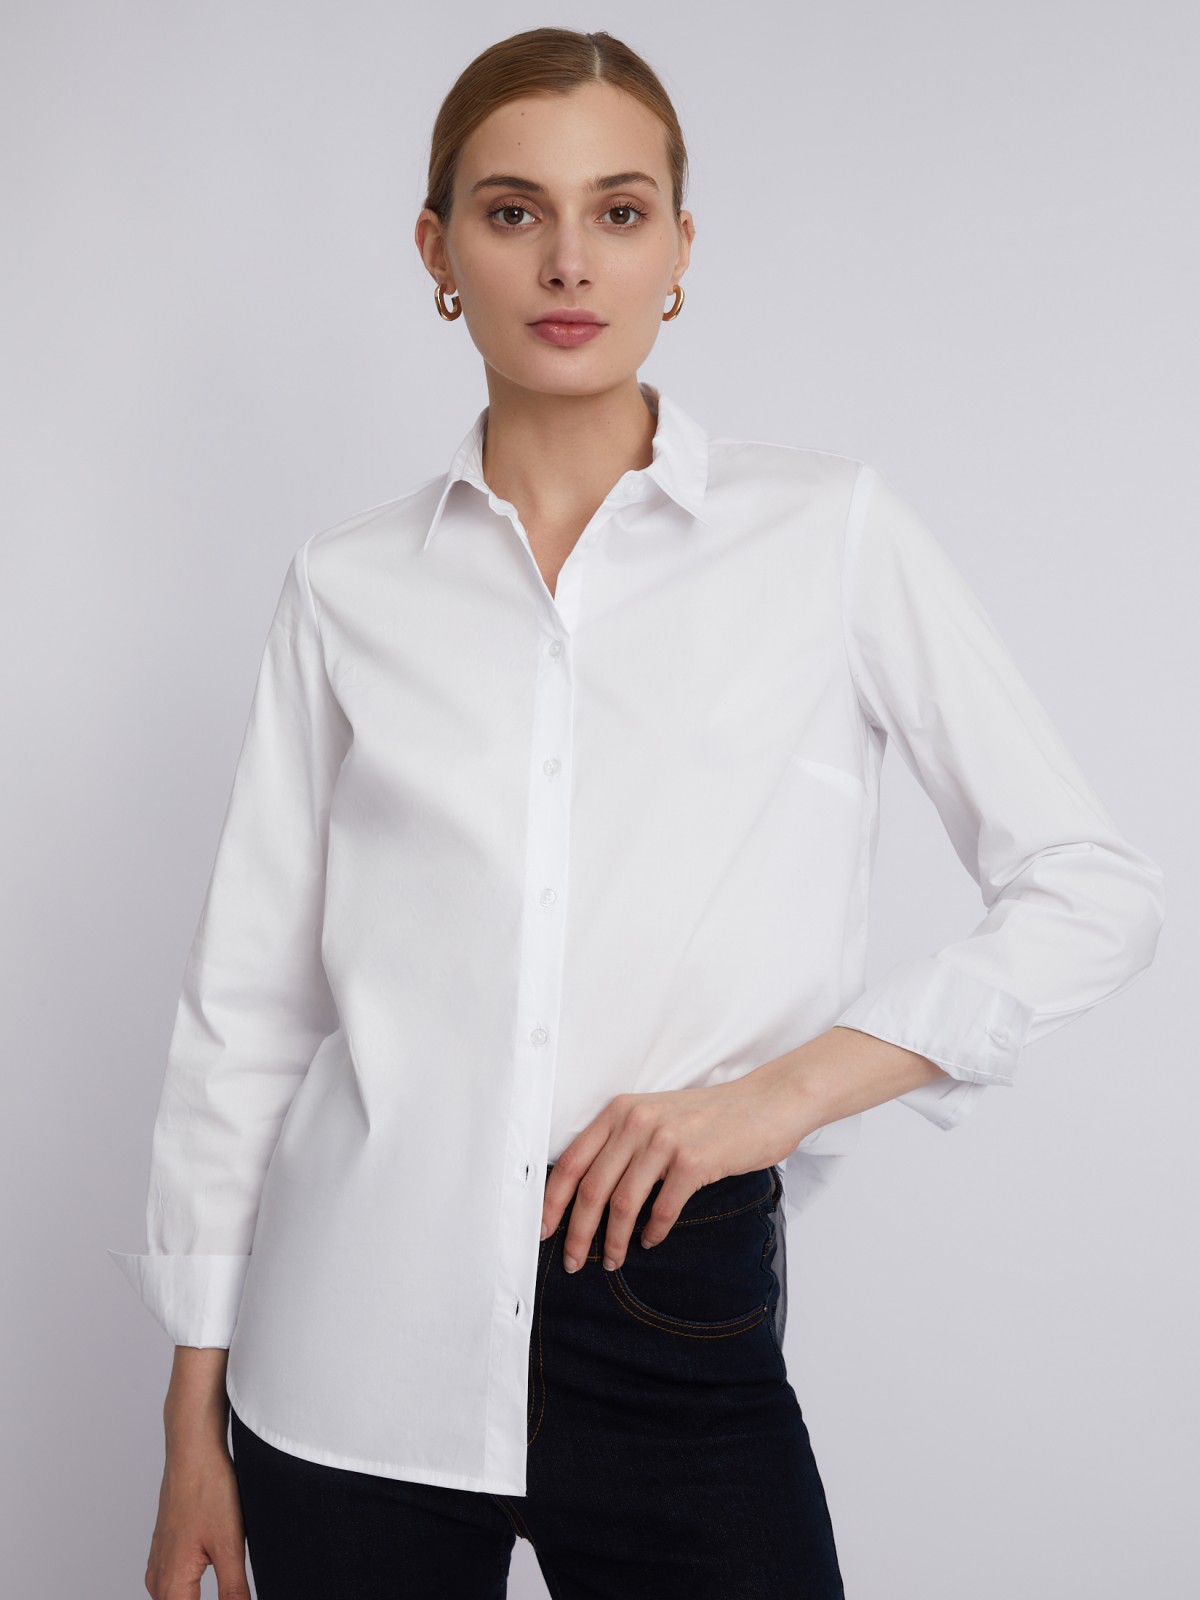 Офисная рубашка с длинным рукавом zolla 023311159152, цвет белый, размер XS - фото 1